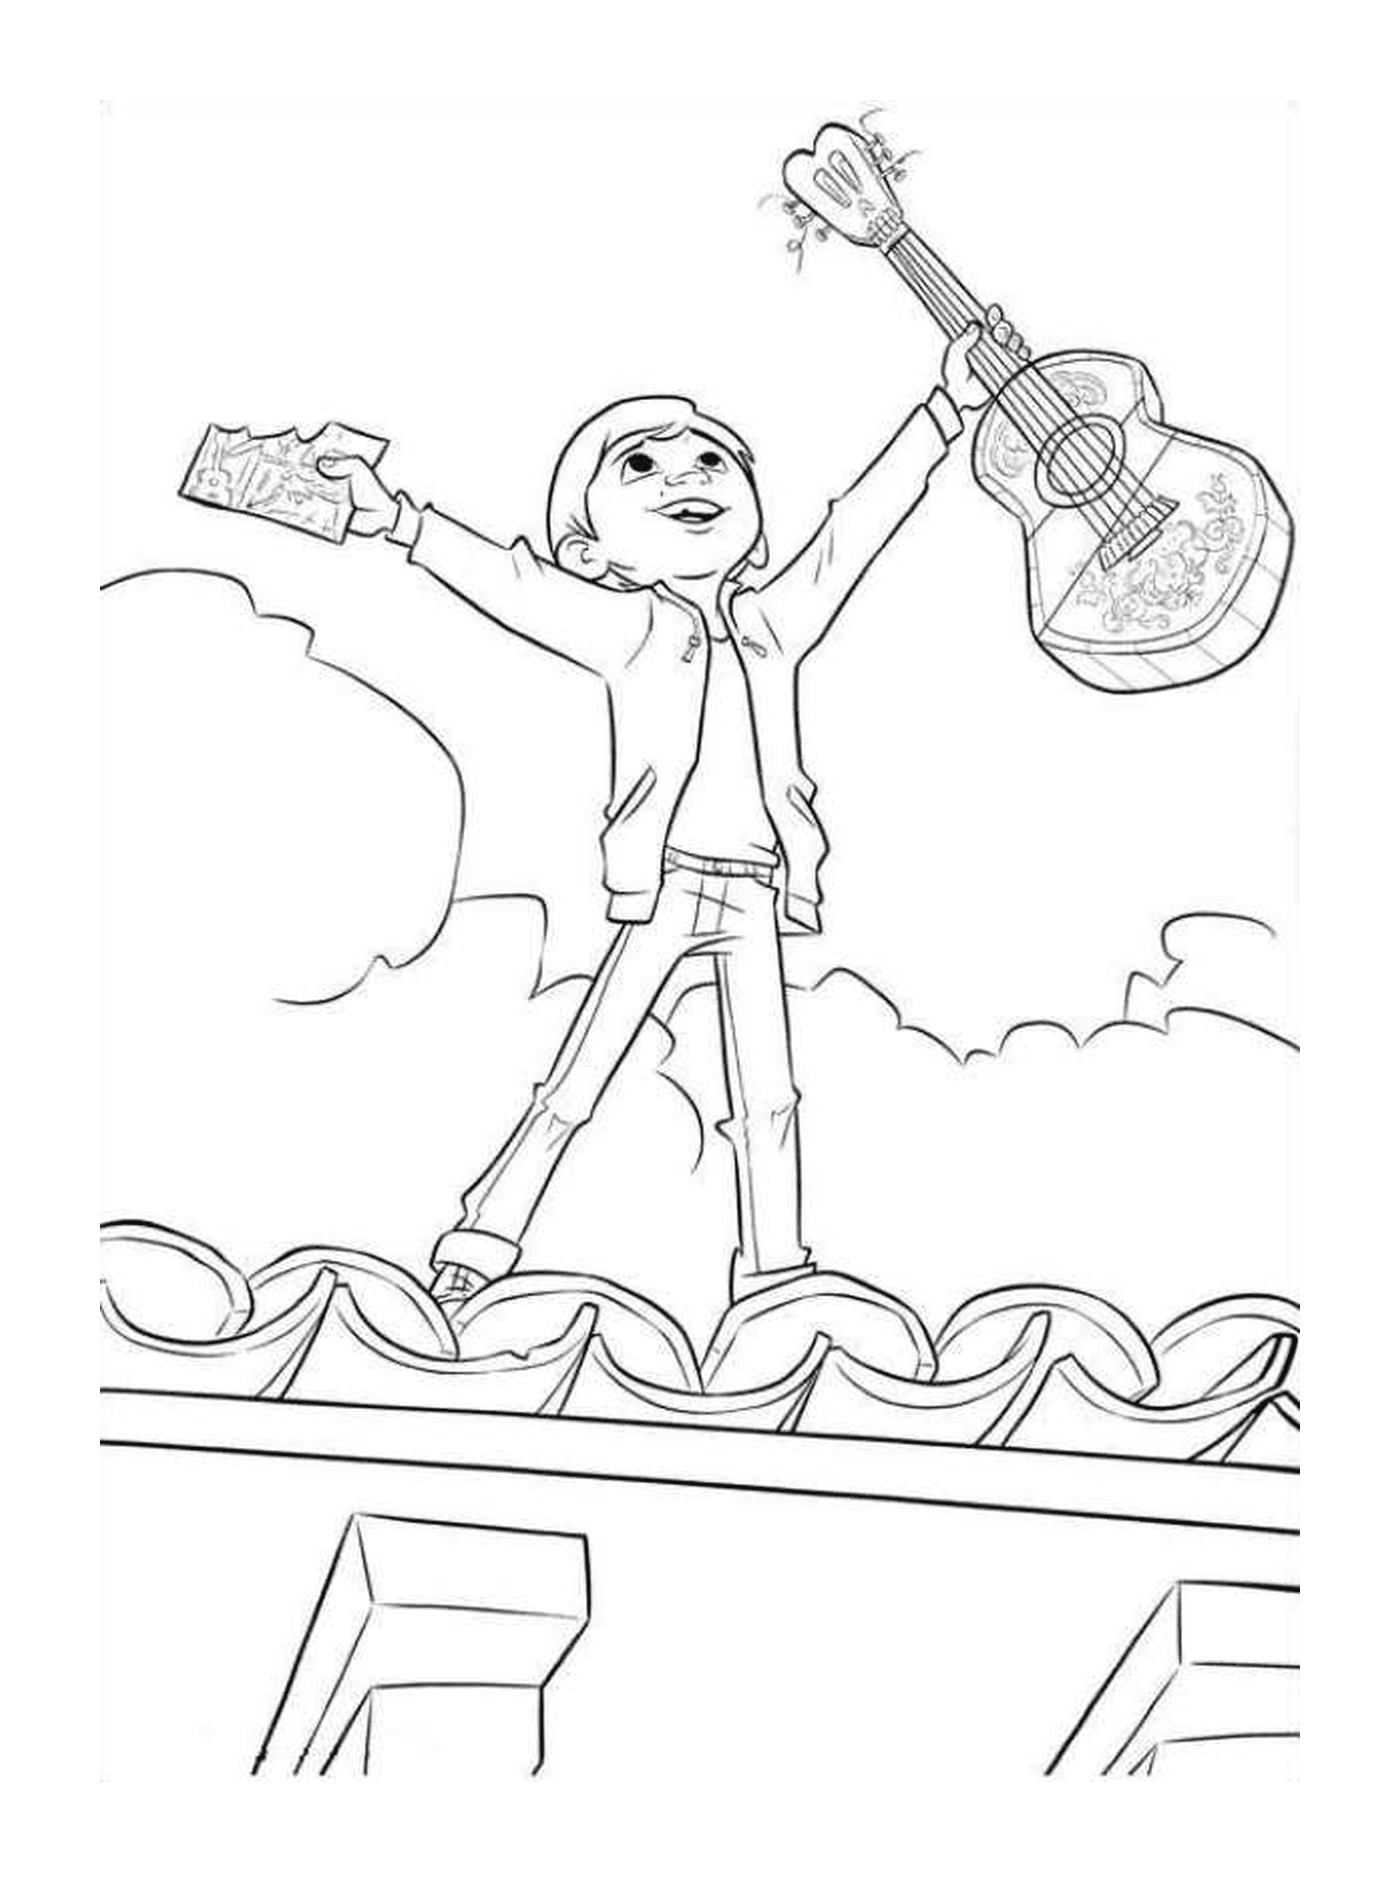  Miguel en el techo de la casa con su guitarra, símbolo de la libertad 